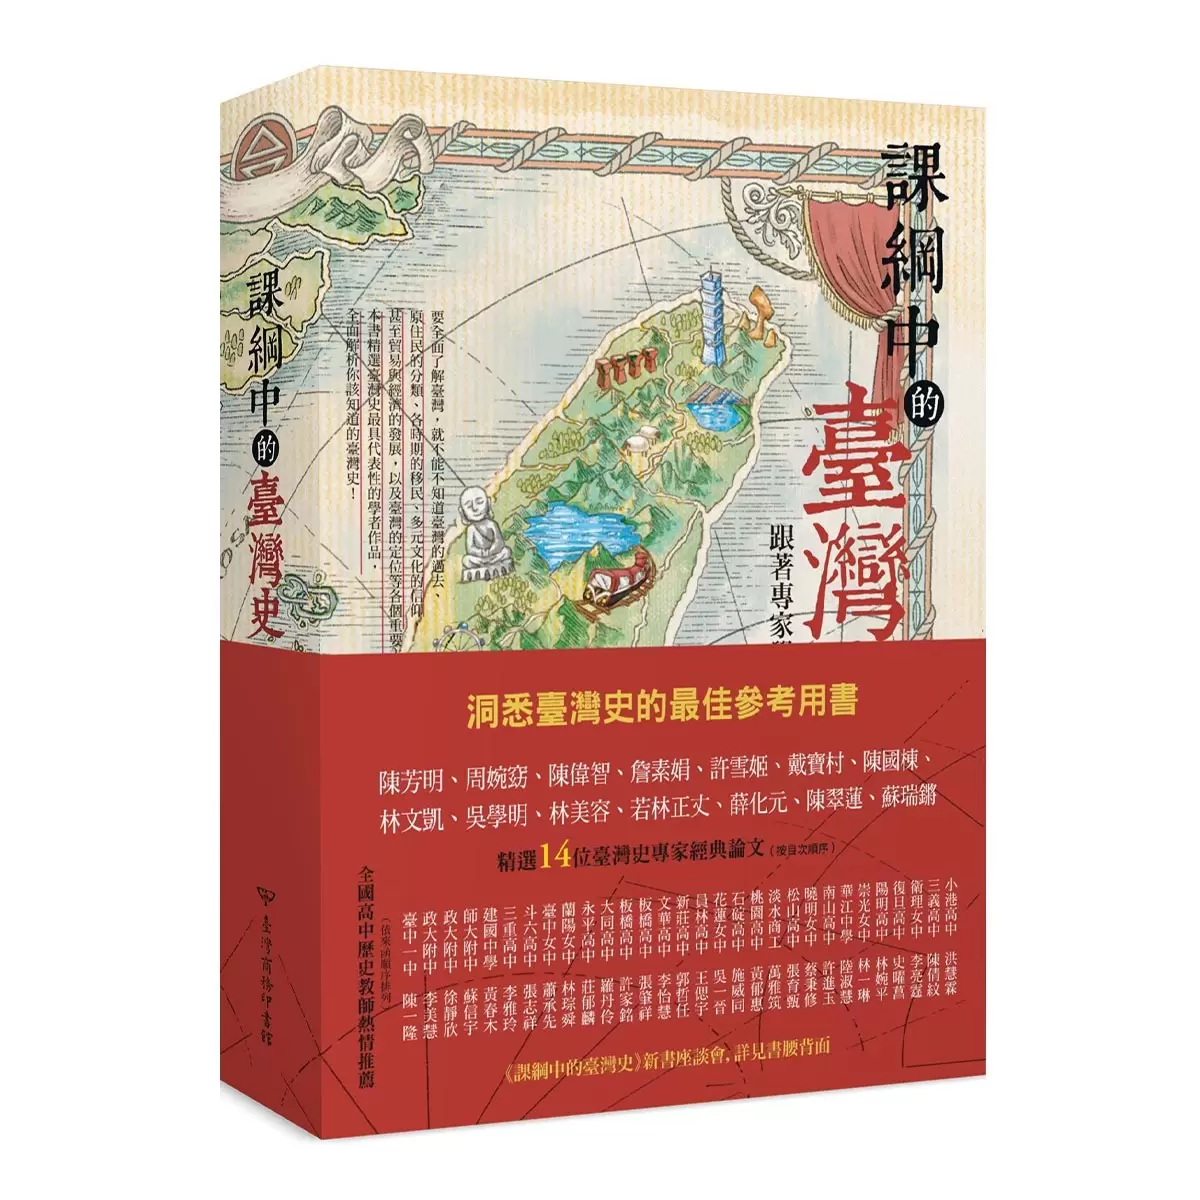 課綱中的臺灣史 跟著專家學者探索歷史新視野